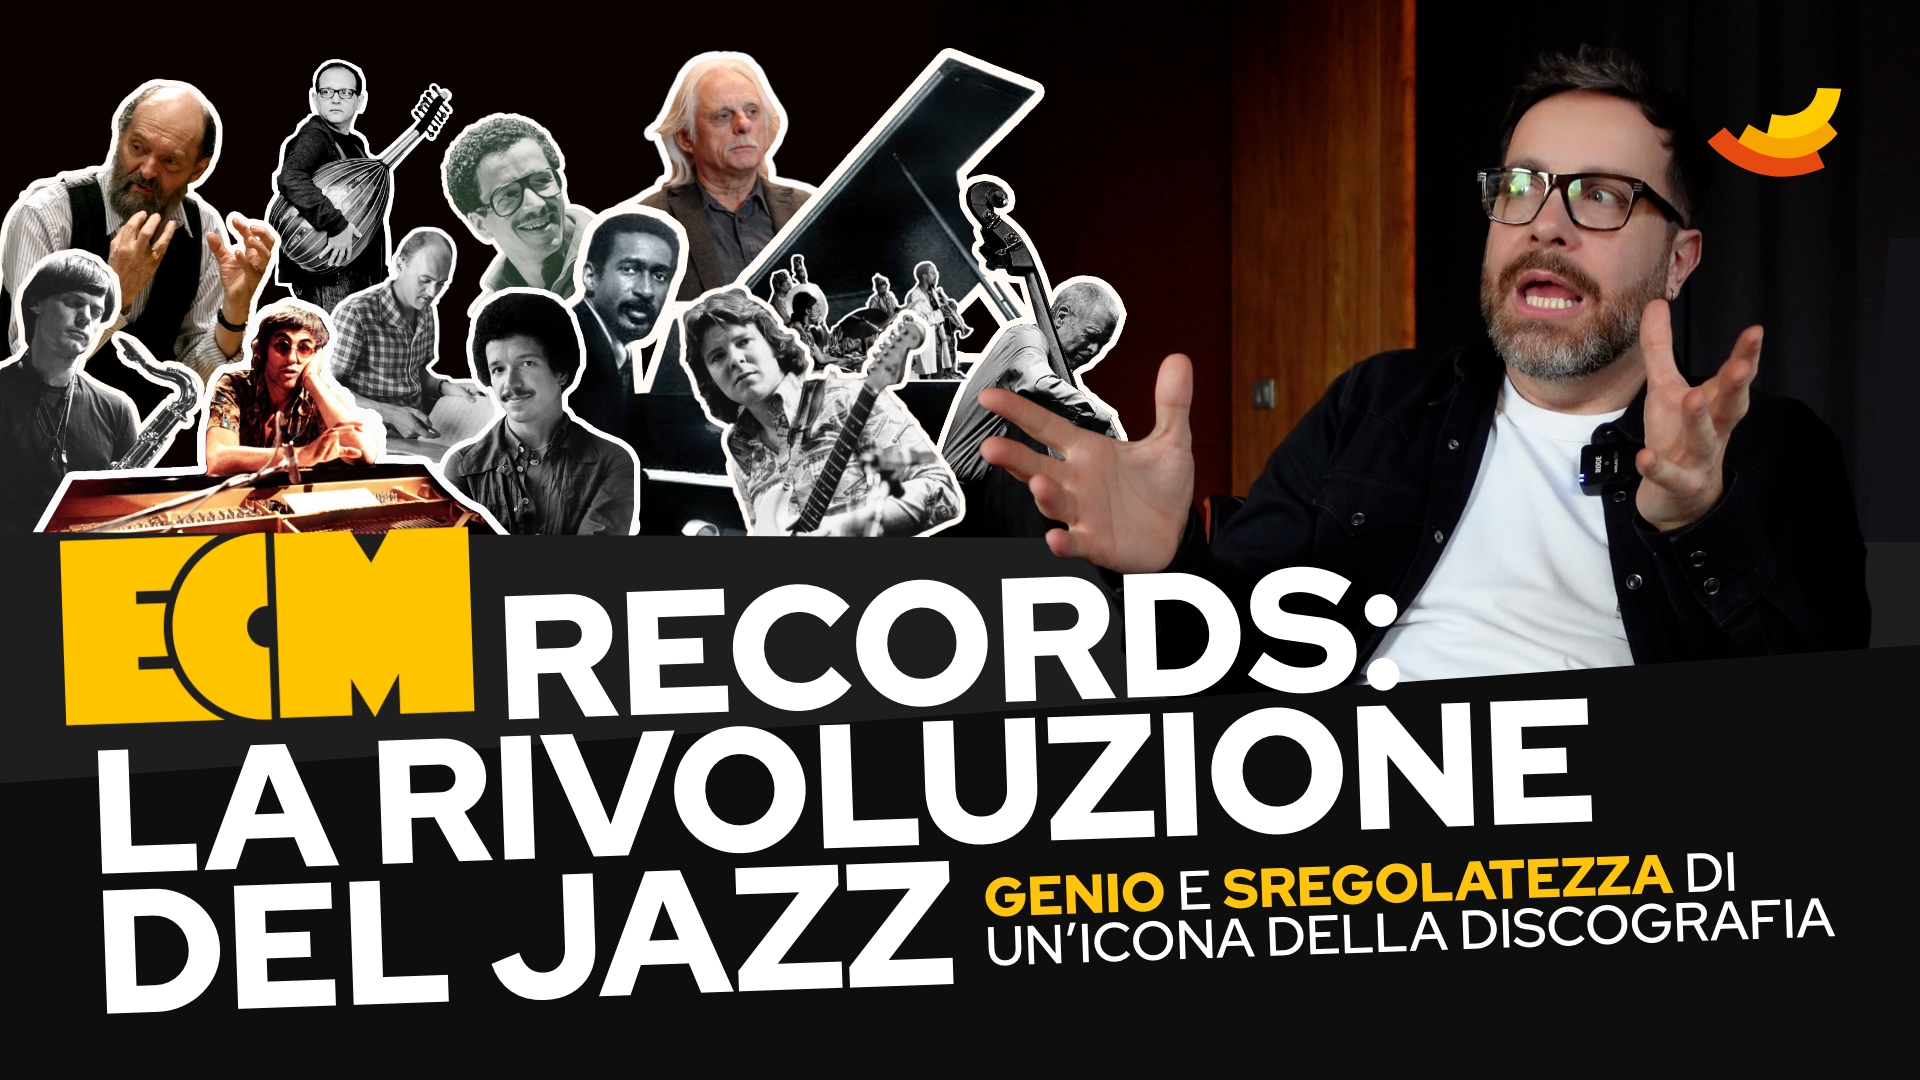 ECM Records: La rivoluzione del Jazz